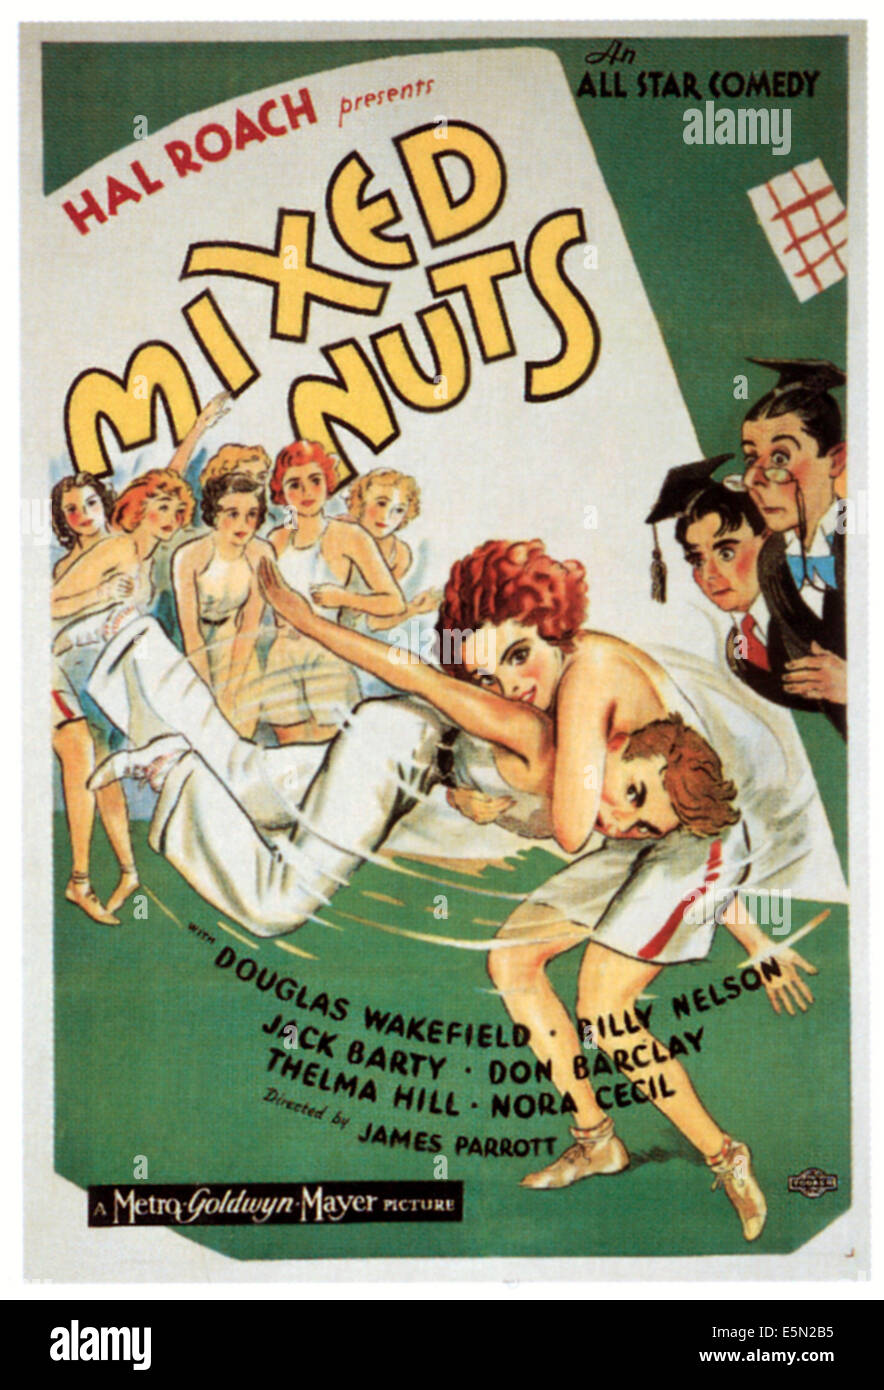 MIXED NUTS, 1934. Stock Photo